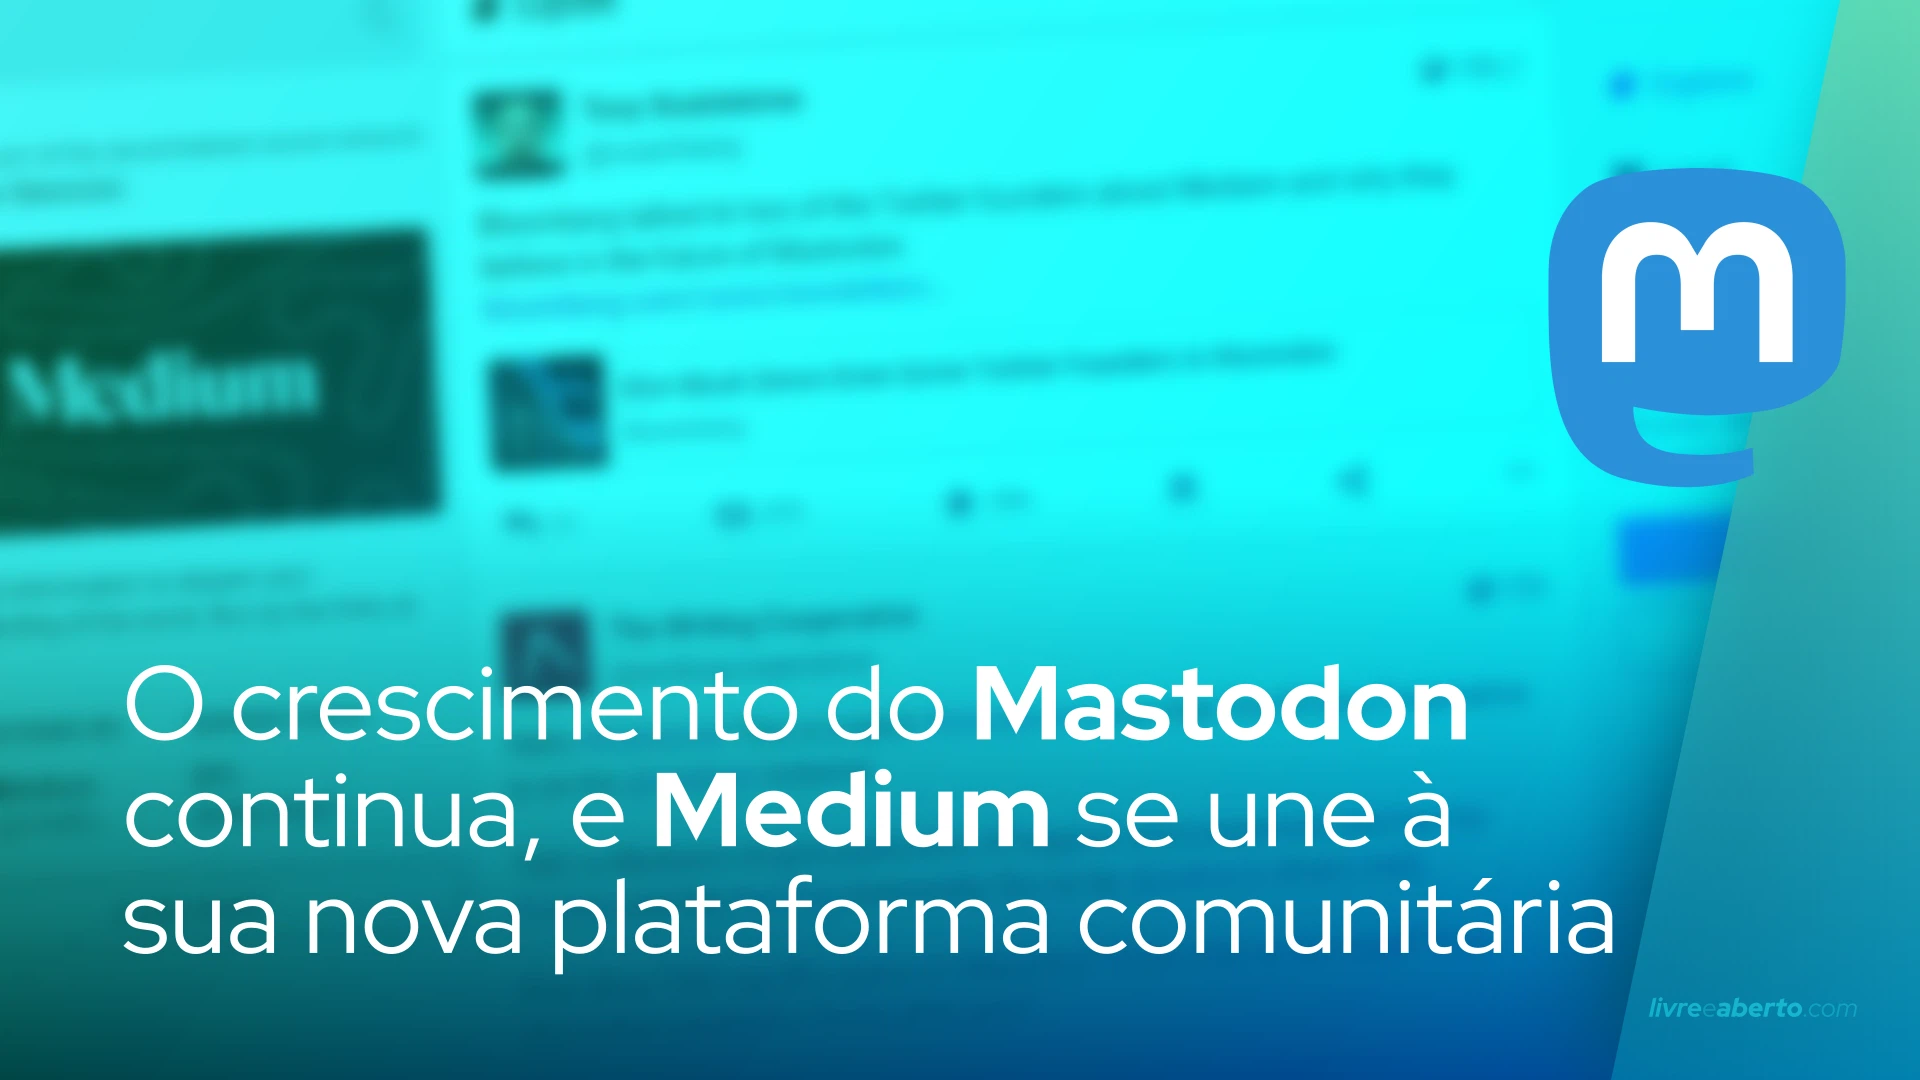 O crescimento do Mastodon continua, e Medium se une à sua nova plataforma comunitária